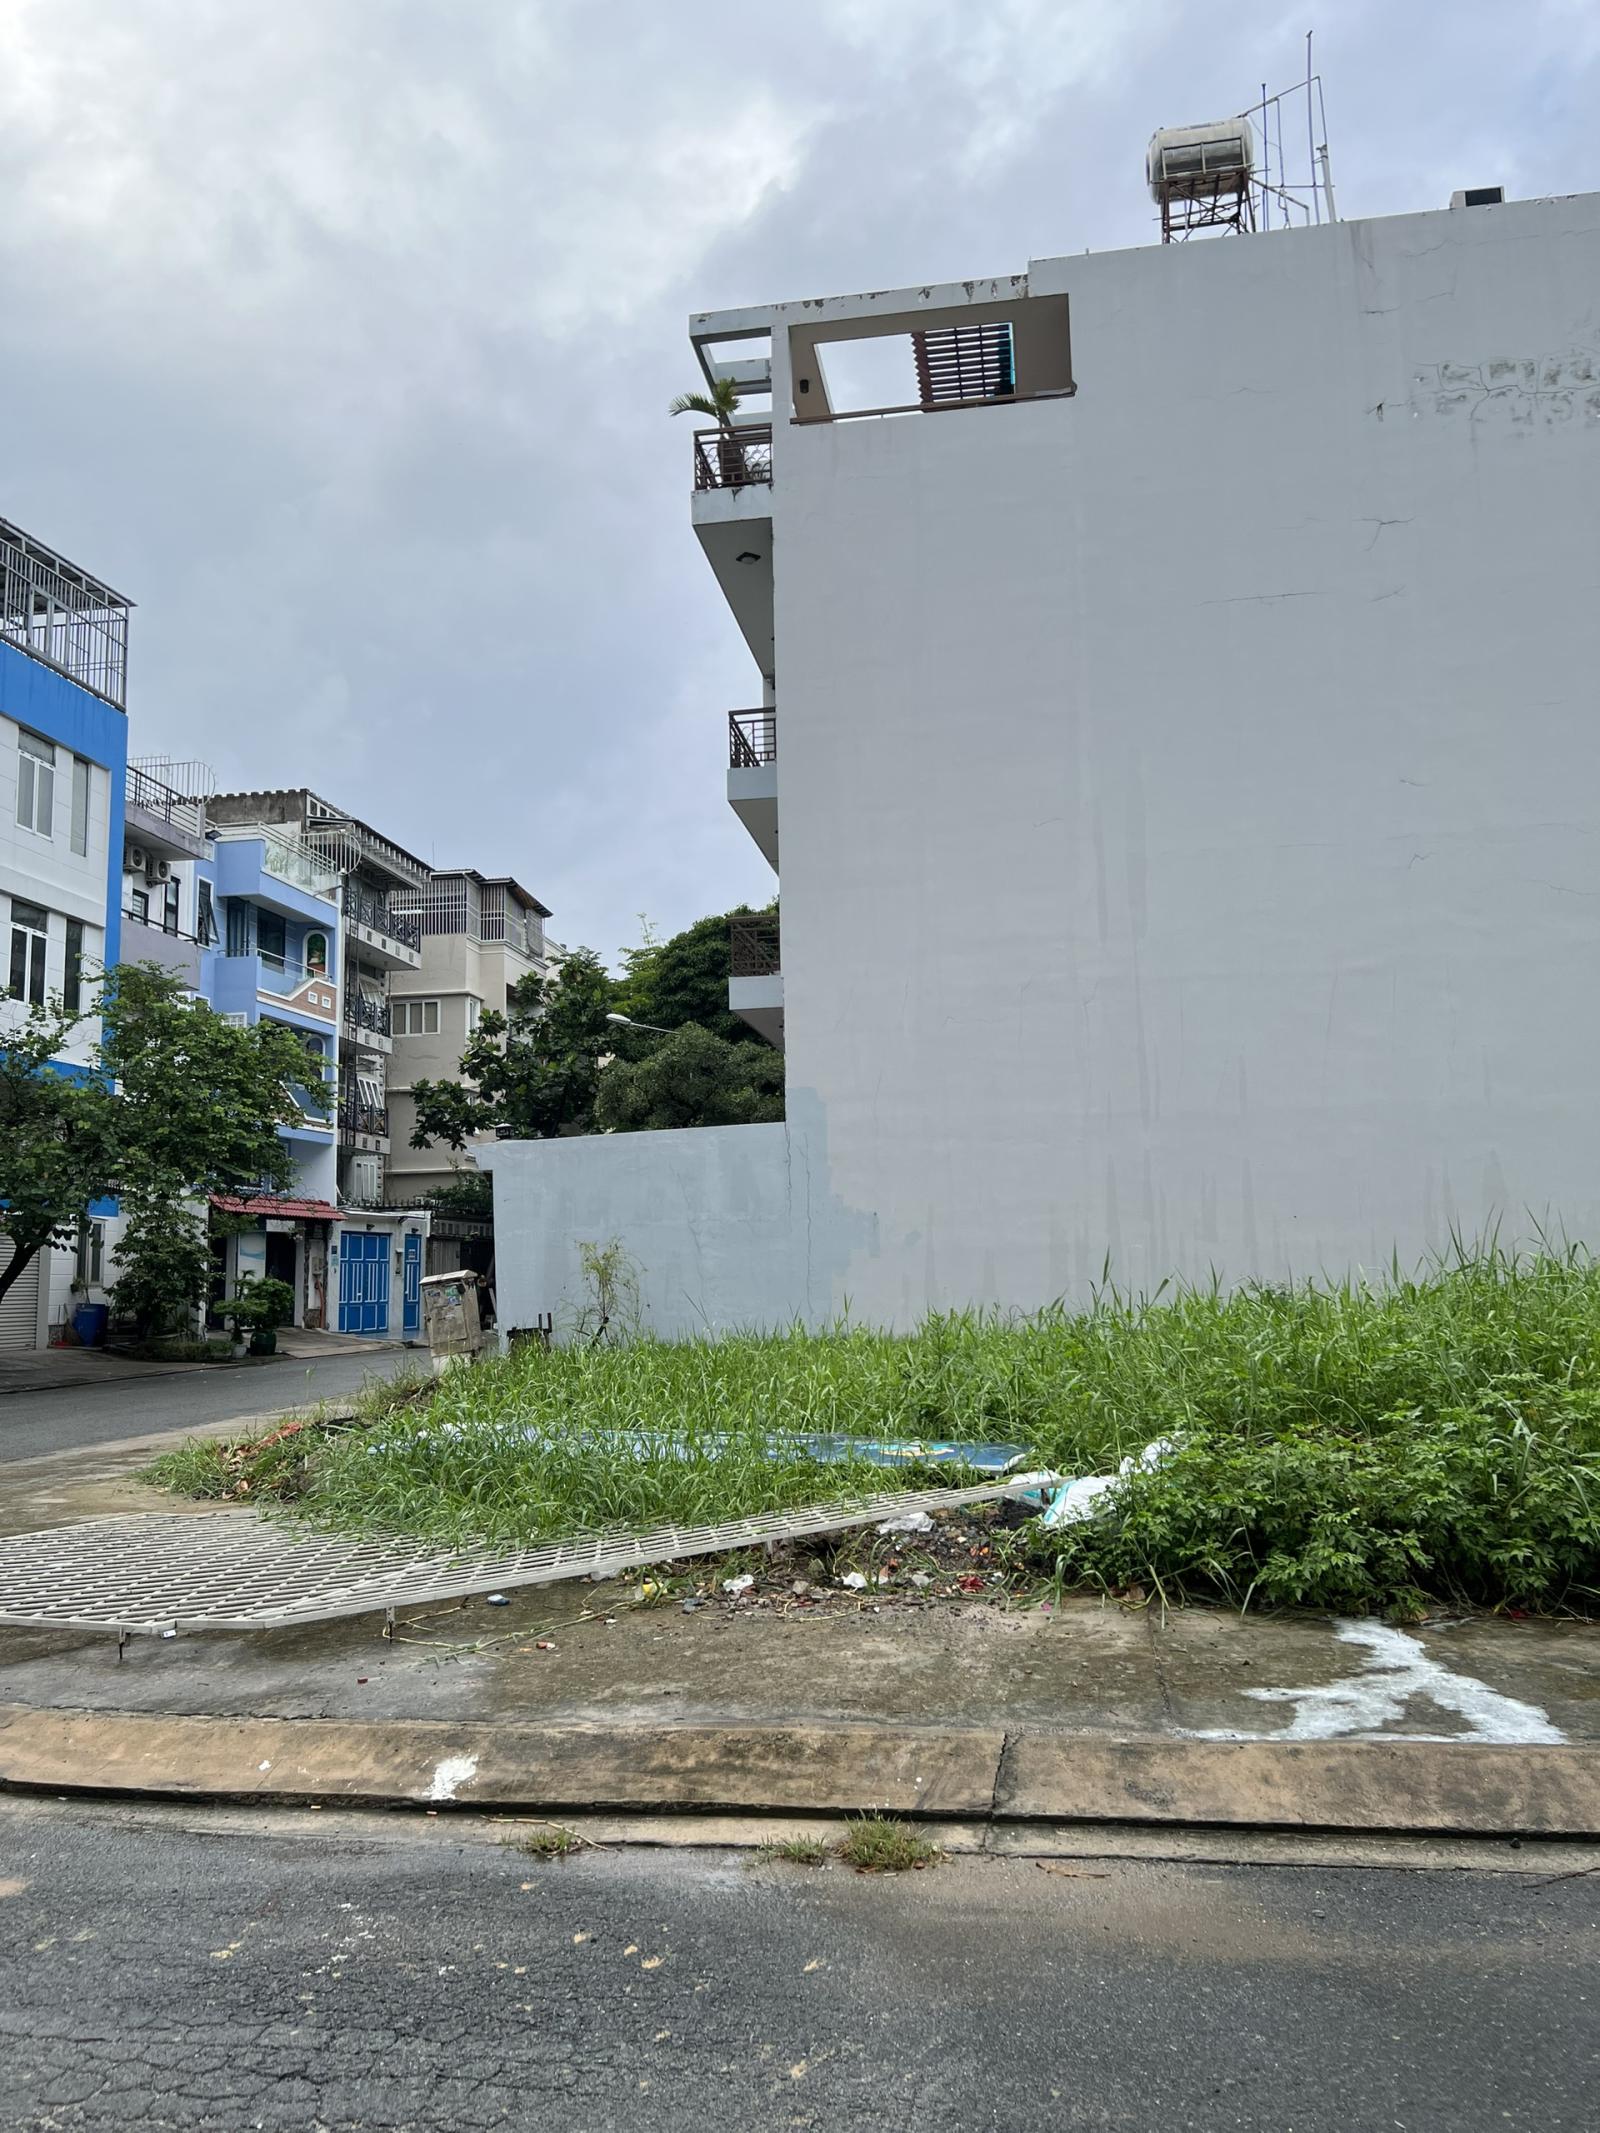 Bán lô góc 2 mặt tiền đường rộng 10m gần đại học Văn Lang quận Bình Thạnh 4x20m